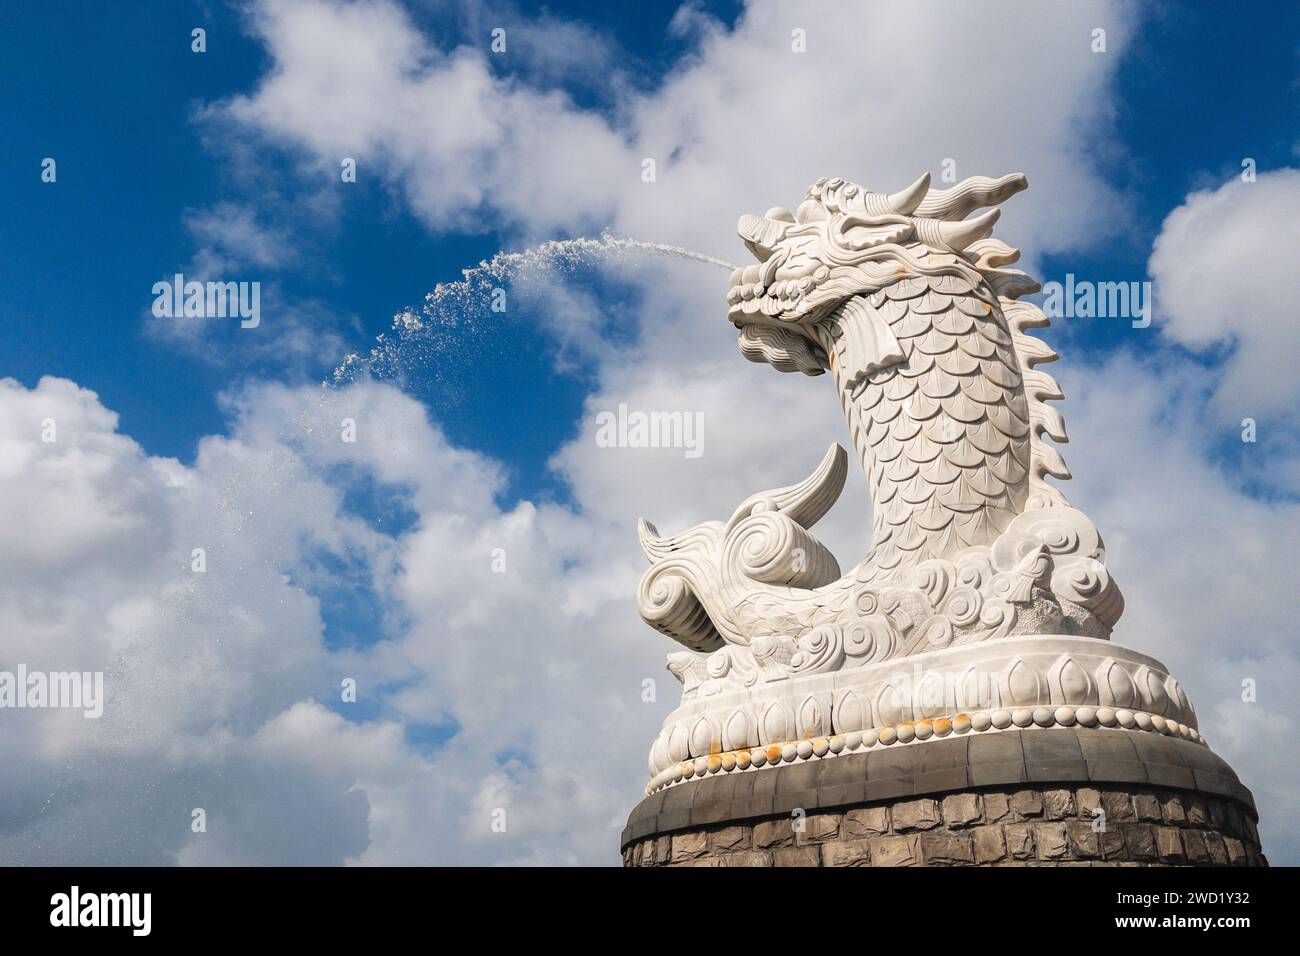 statua della carpa del drago, simbolo di danang in vietnam Foto Stock